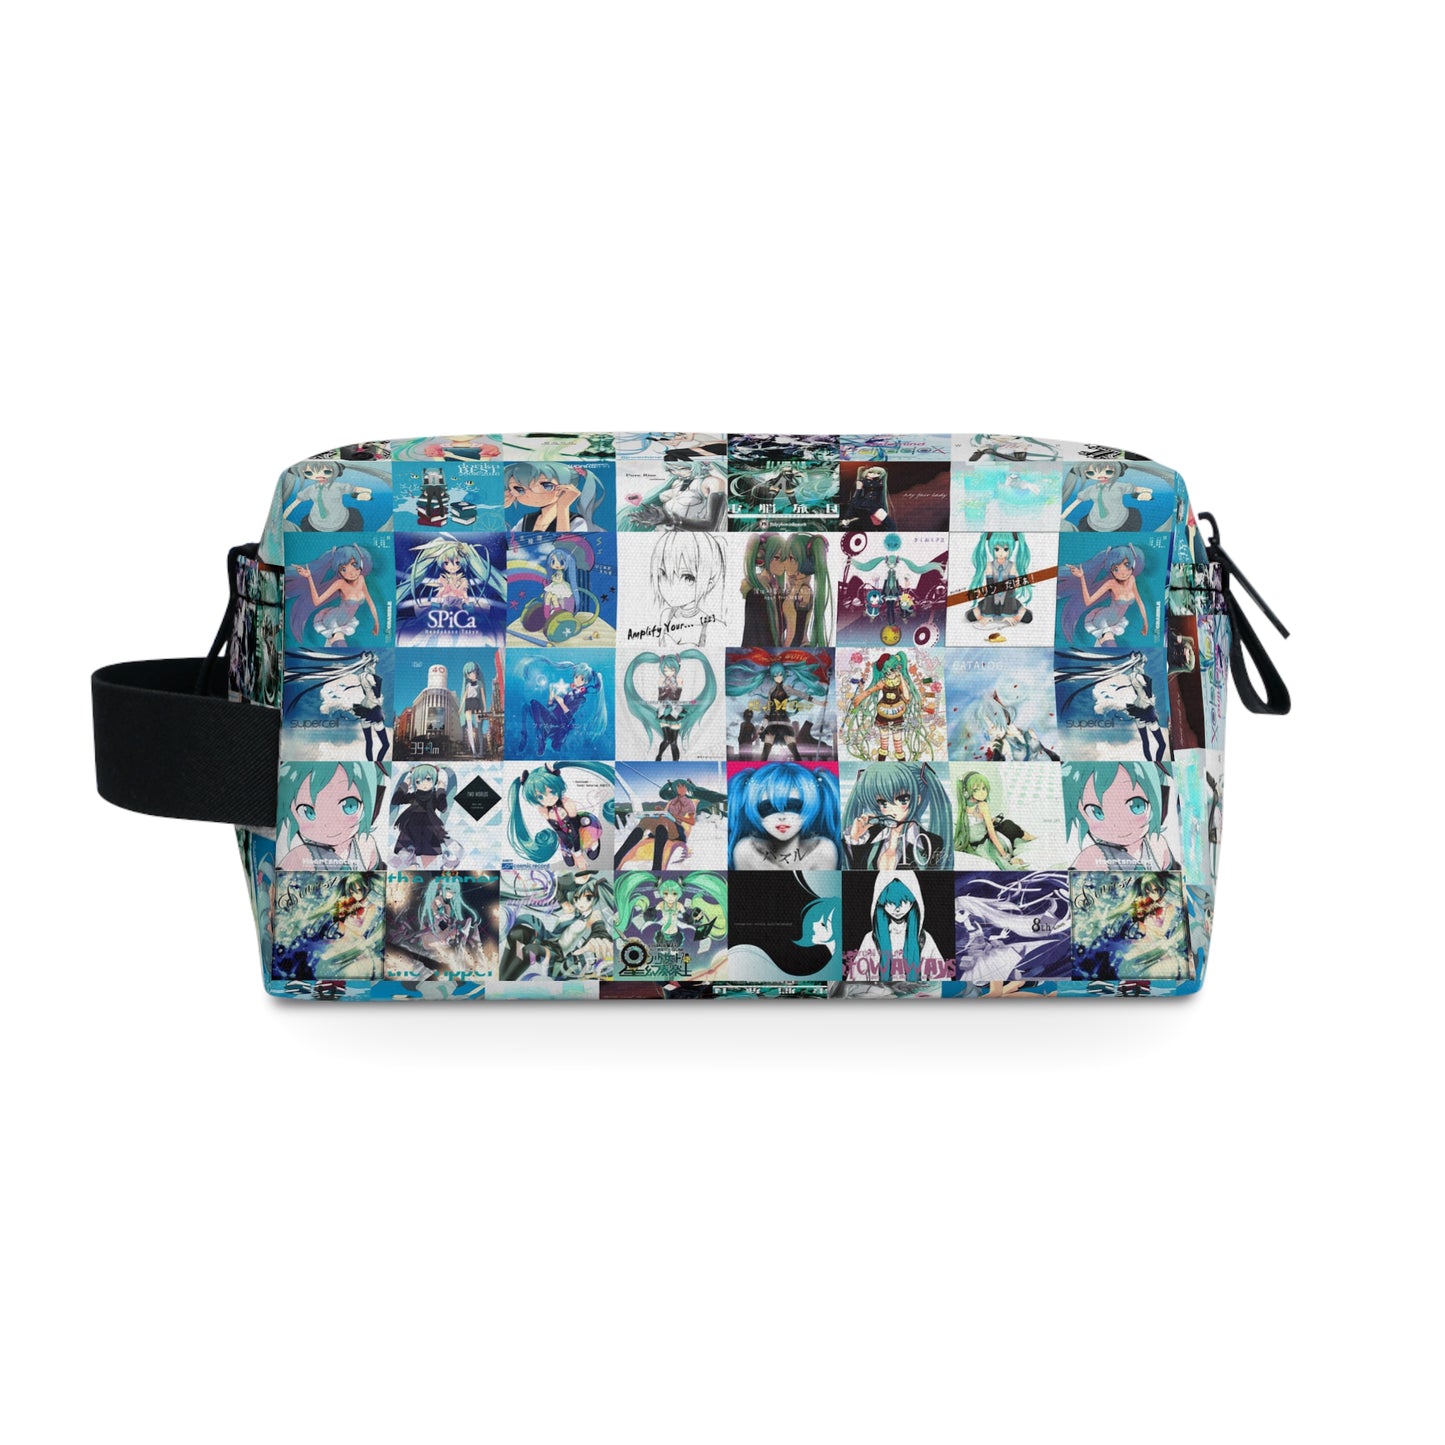 Hatsune Miku Album Cover Collage Toiletry Bag